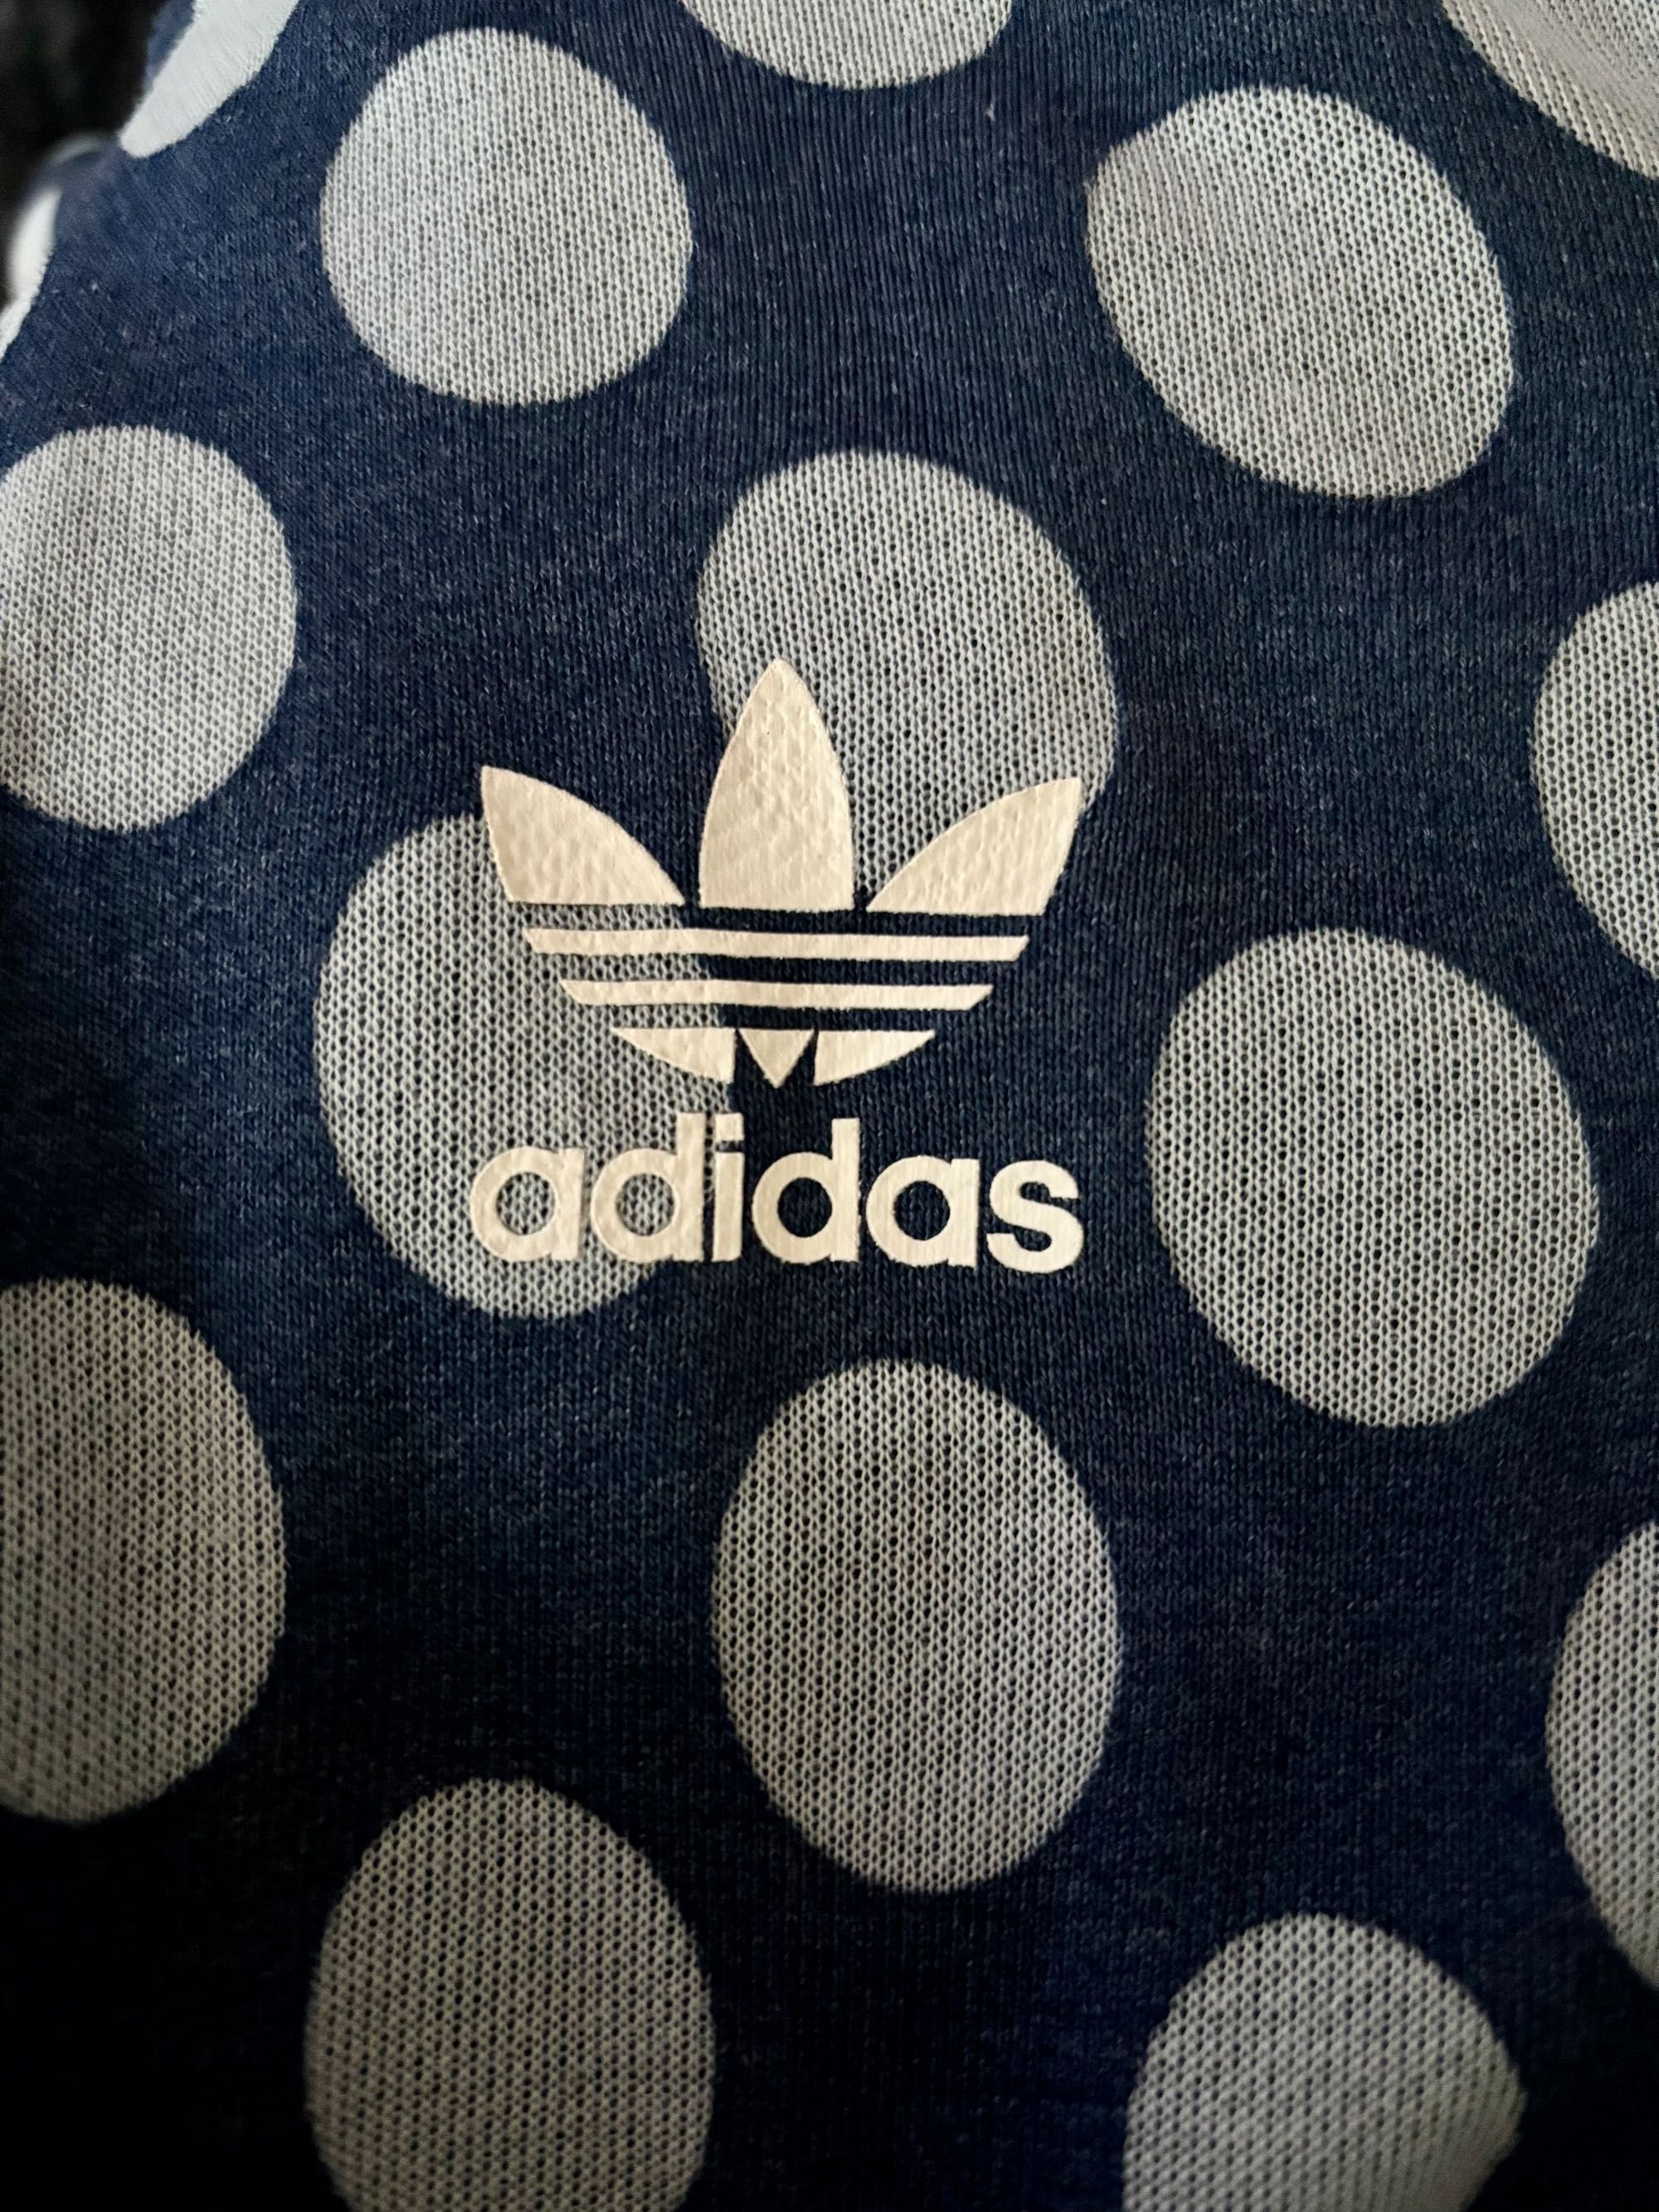 Adidas bluza w słodkie kropki  NOWA rozmiar XS  BJ8323